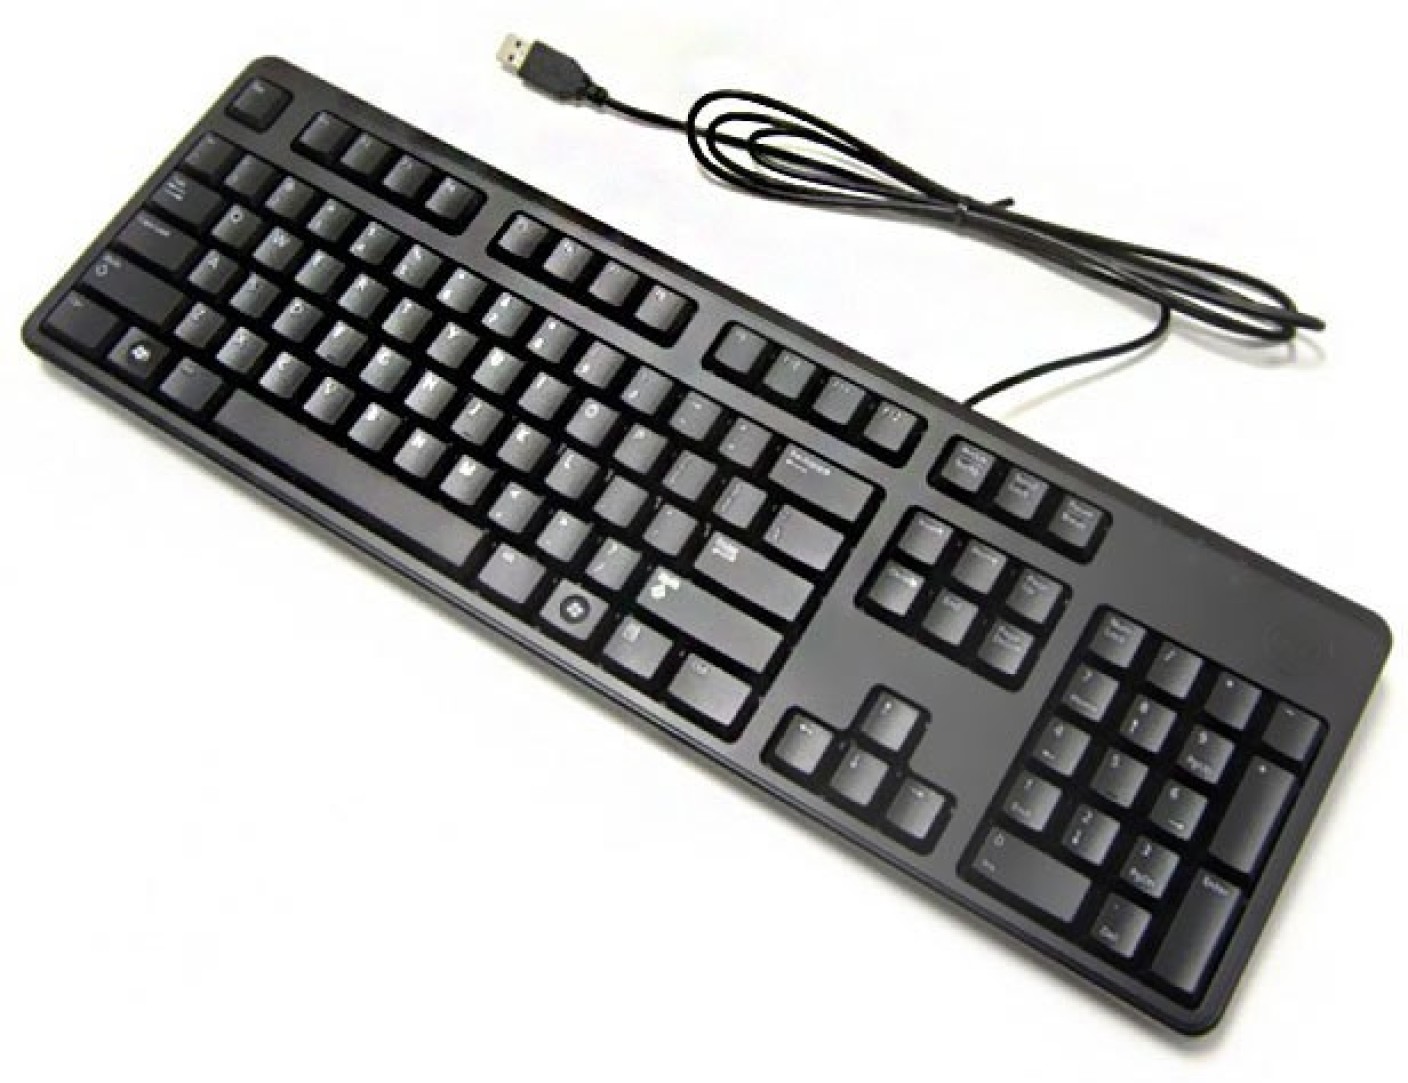 Dell keyboard kb212 b user manual